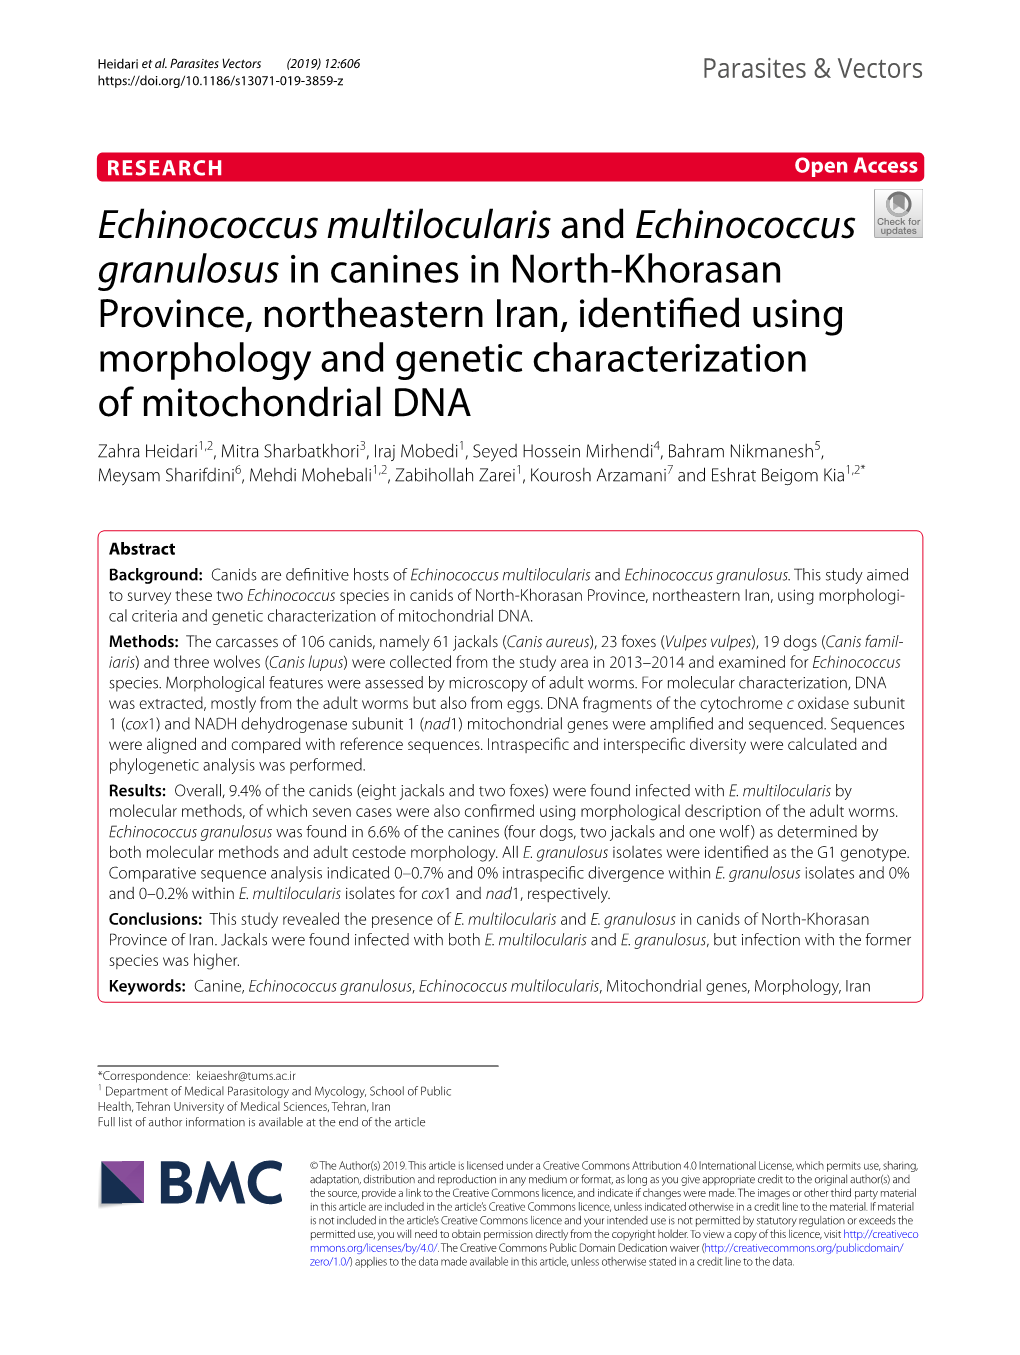 Echinococcus Multilocularis and Echinococcus Granulosus In